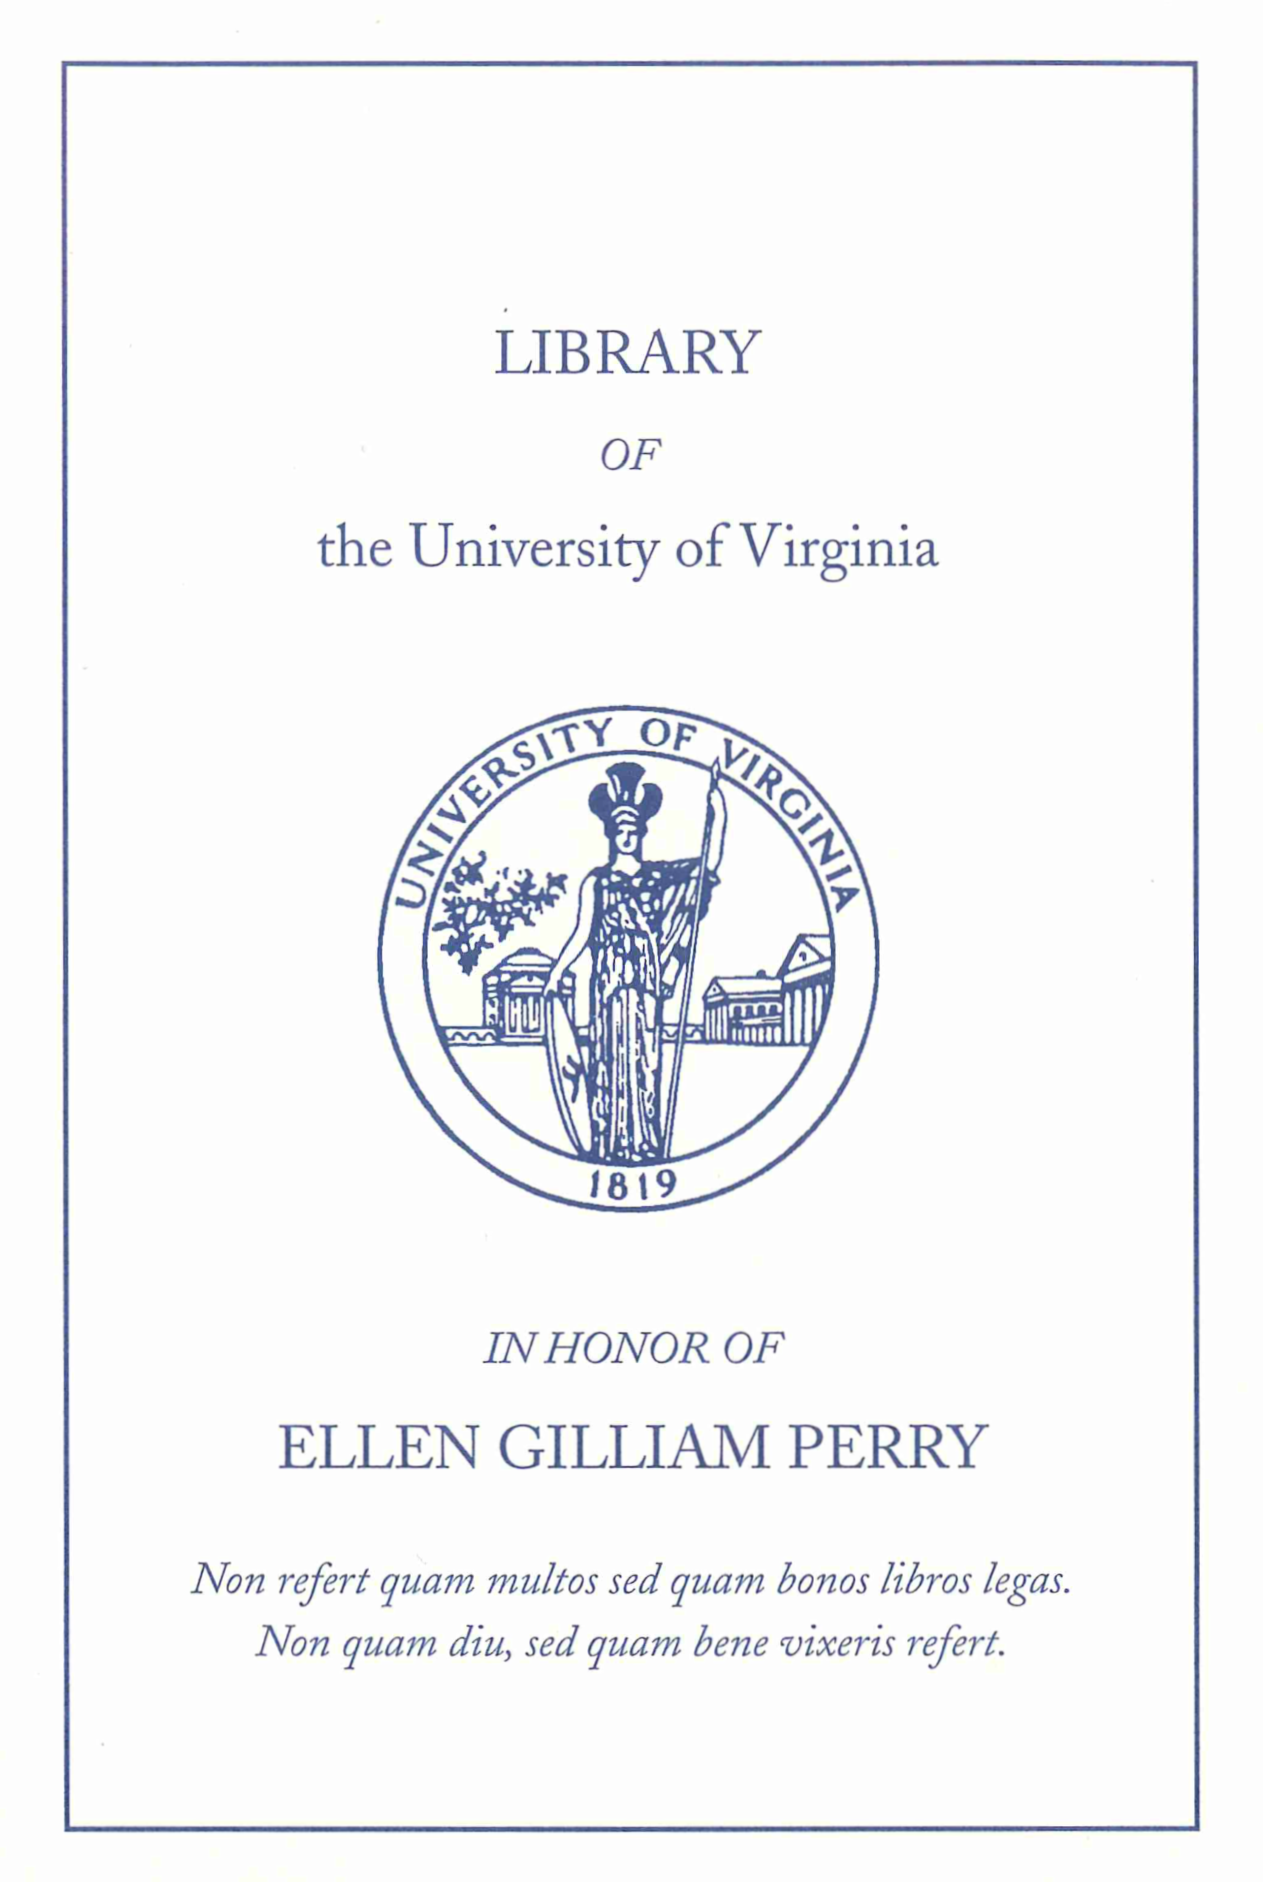 Seal of the University of Virginia. Motto at bottom: "Non refert quam multos sed quam bonos libros legas. Non quam diu, sed quam bene vixeris refert.